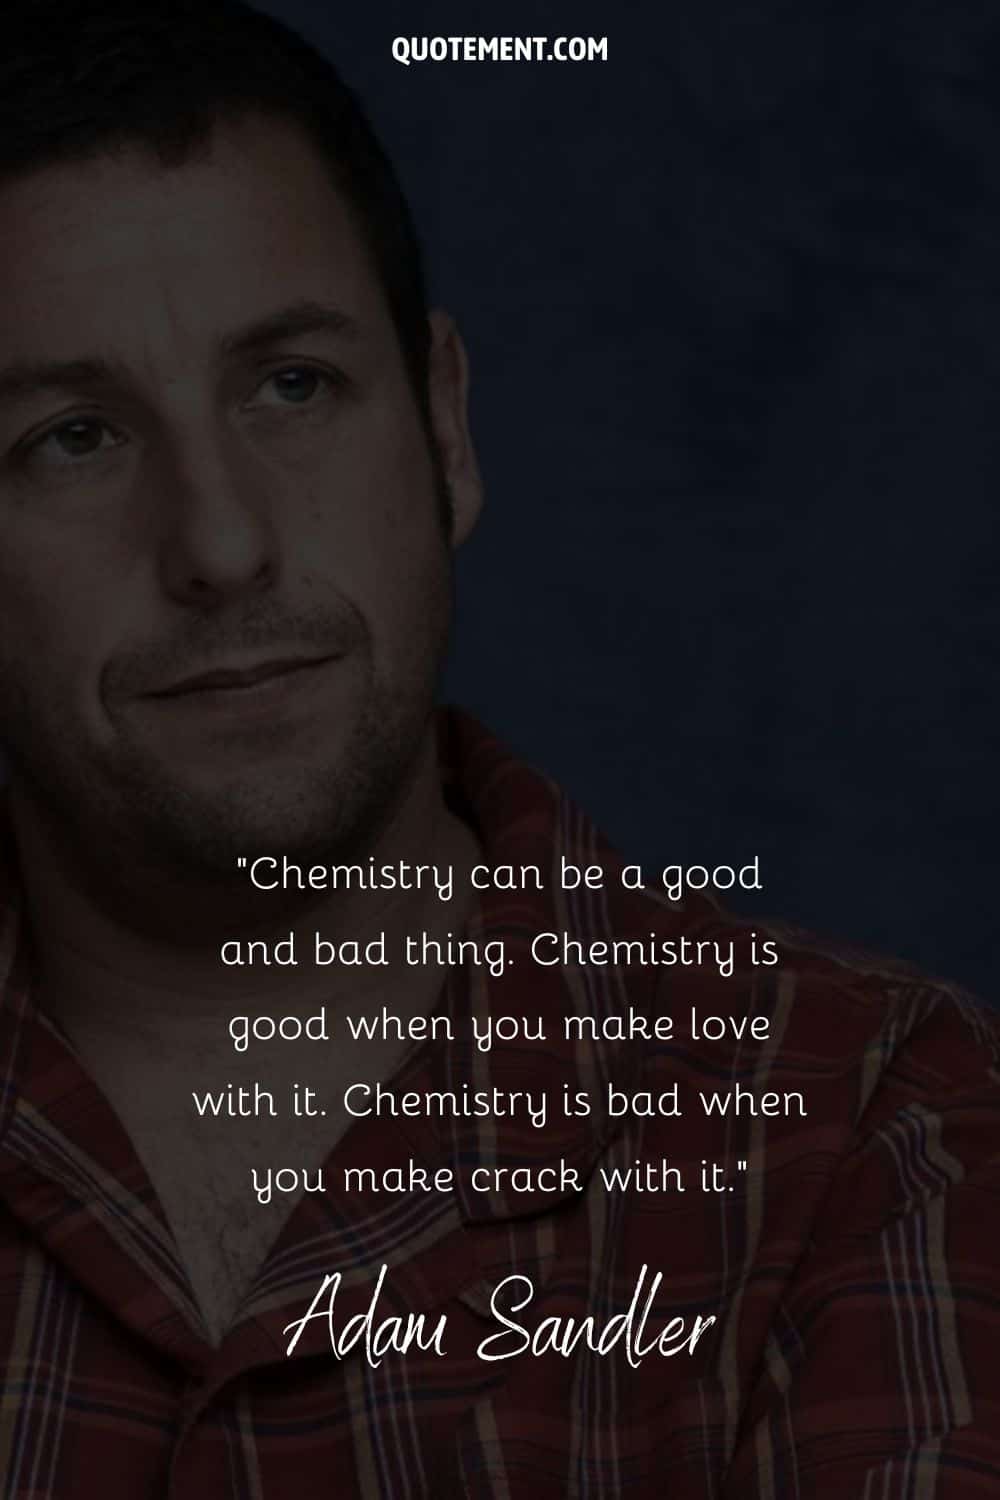 Cita inspiradora y divertida de Adam Sandler sobre la química